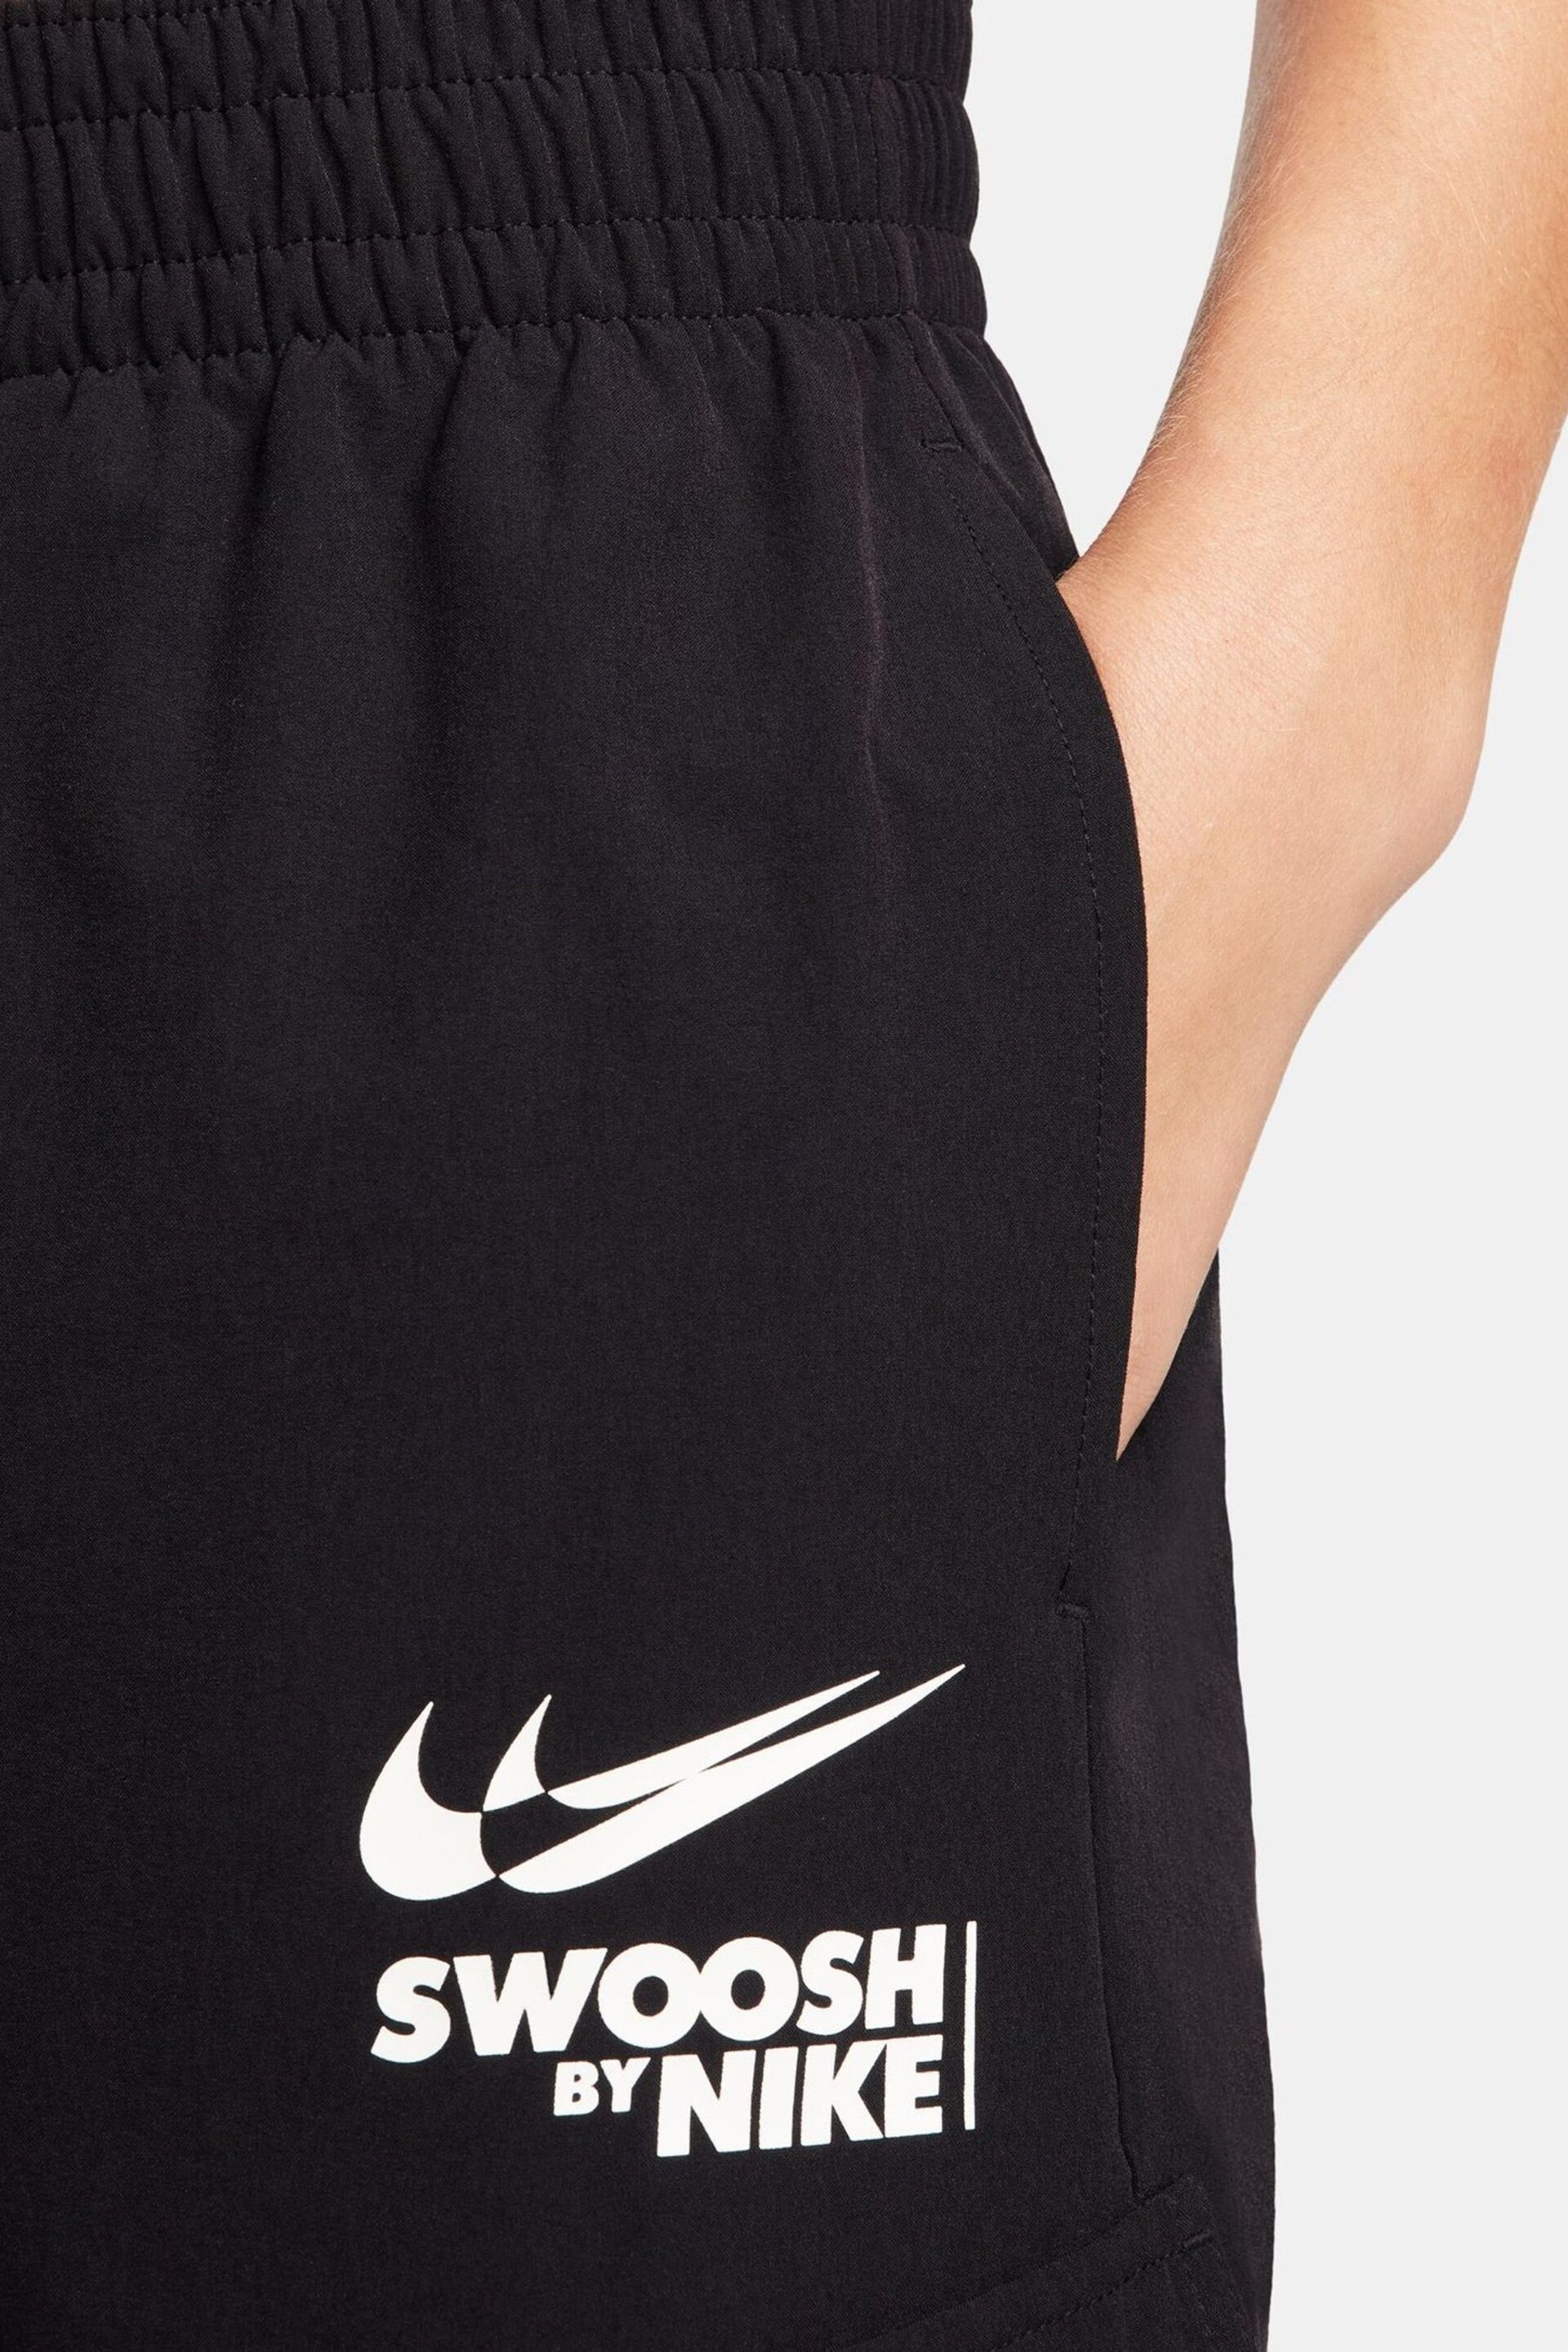 Nike Black Swoosh Logo Cargo Joggers - Image 5 of 9